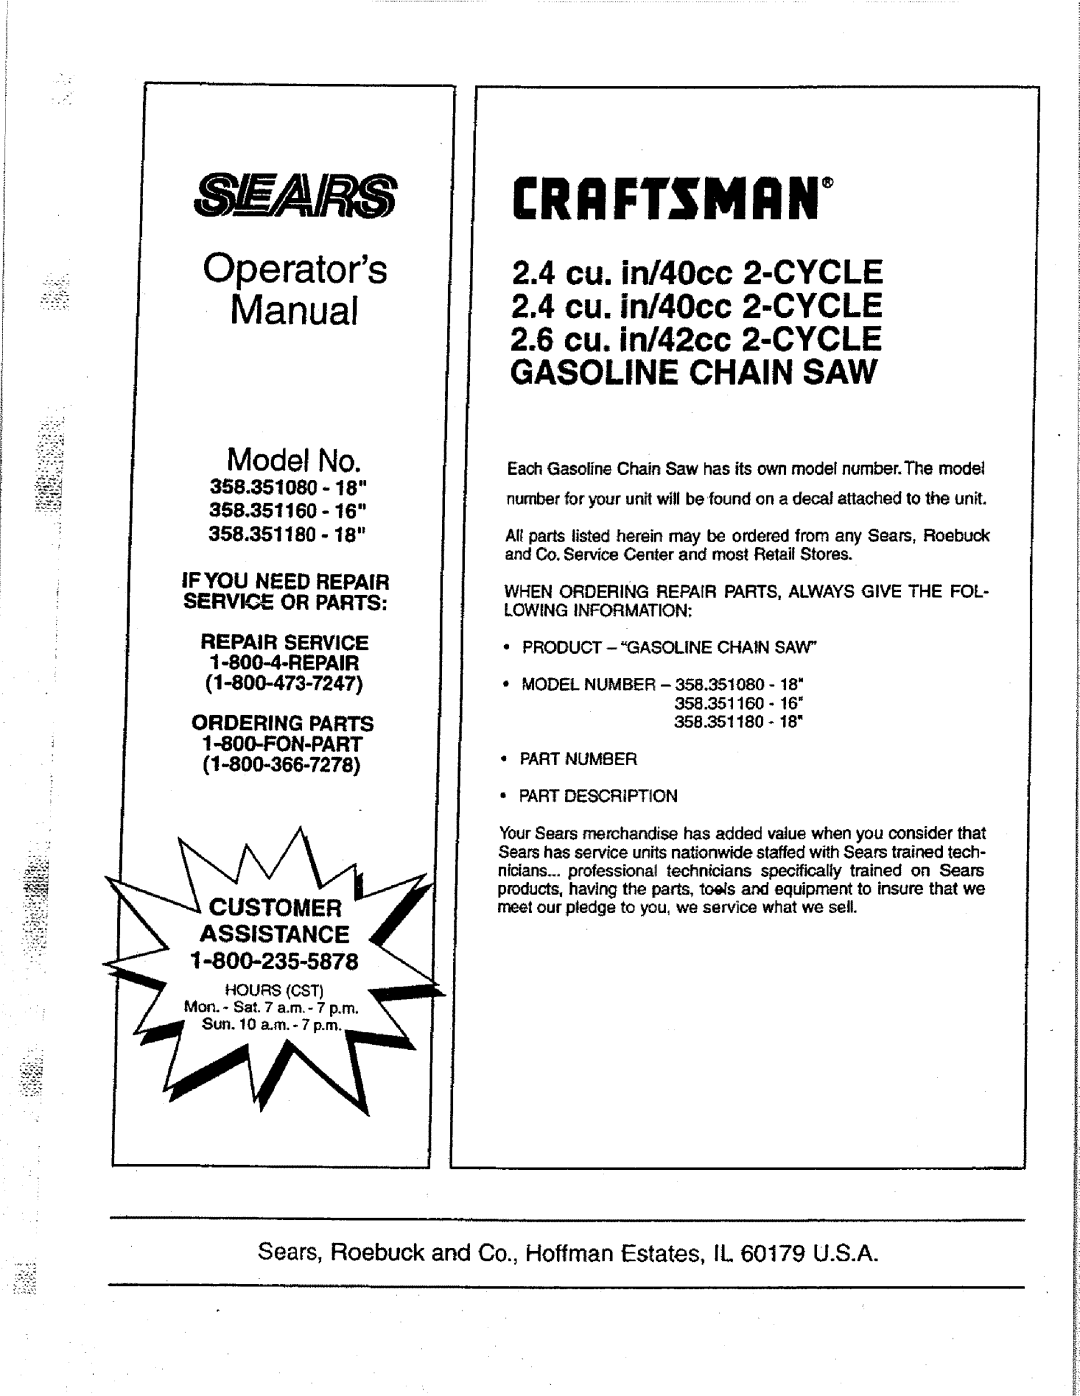 Sears 358.351180-18 2.4cu. in/40cc 2-CYCLE 2.4cu. in/40cc 2-CYCLE, 2.6cu. in/42cc 2-CYCLEGASOLINE CHAIN SAW, Crrftsnrn 